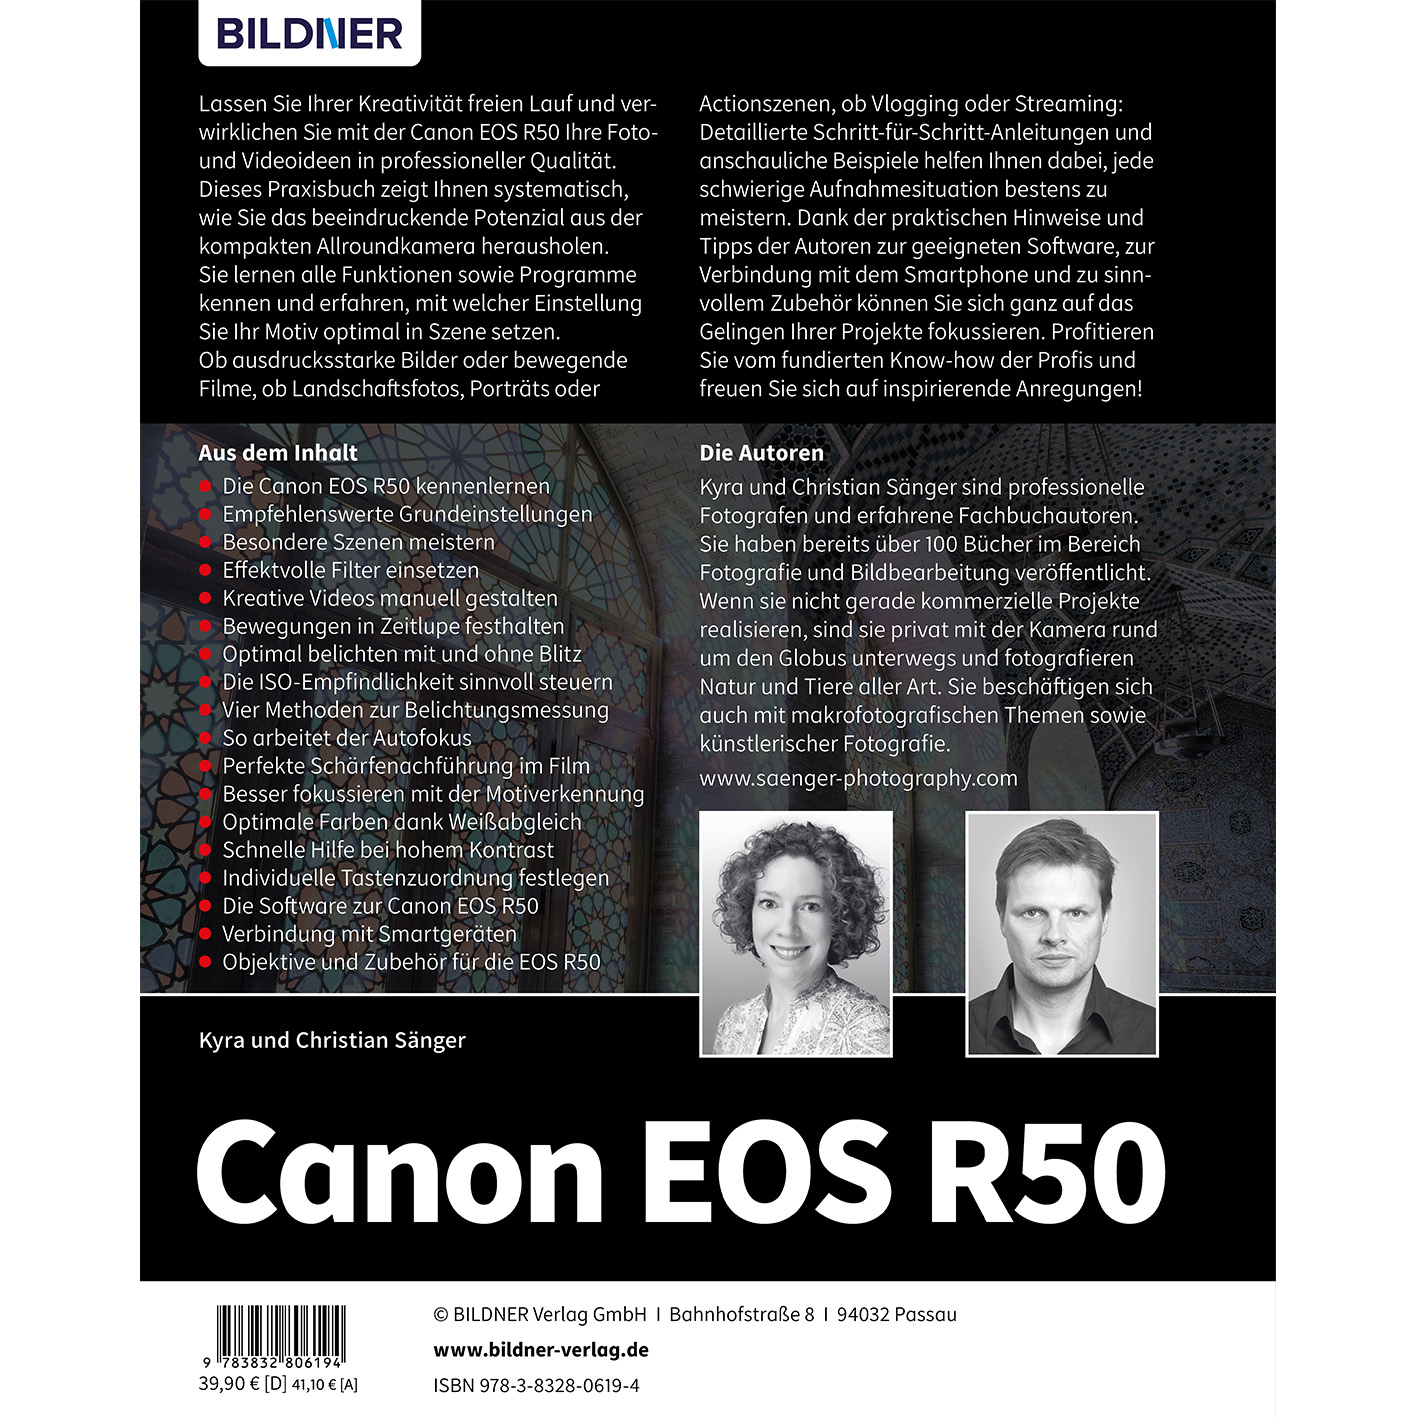 EOS - Das Kamera Ihrer Canon R50 Praxisbuch umfangreiche zu